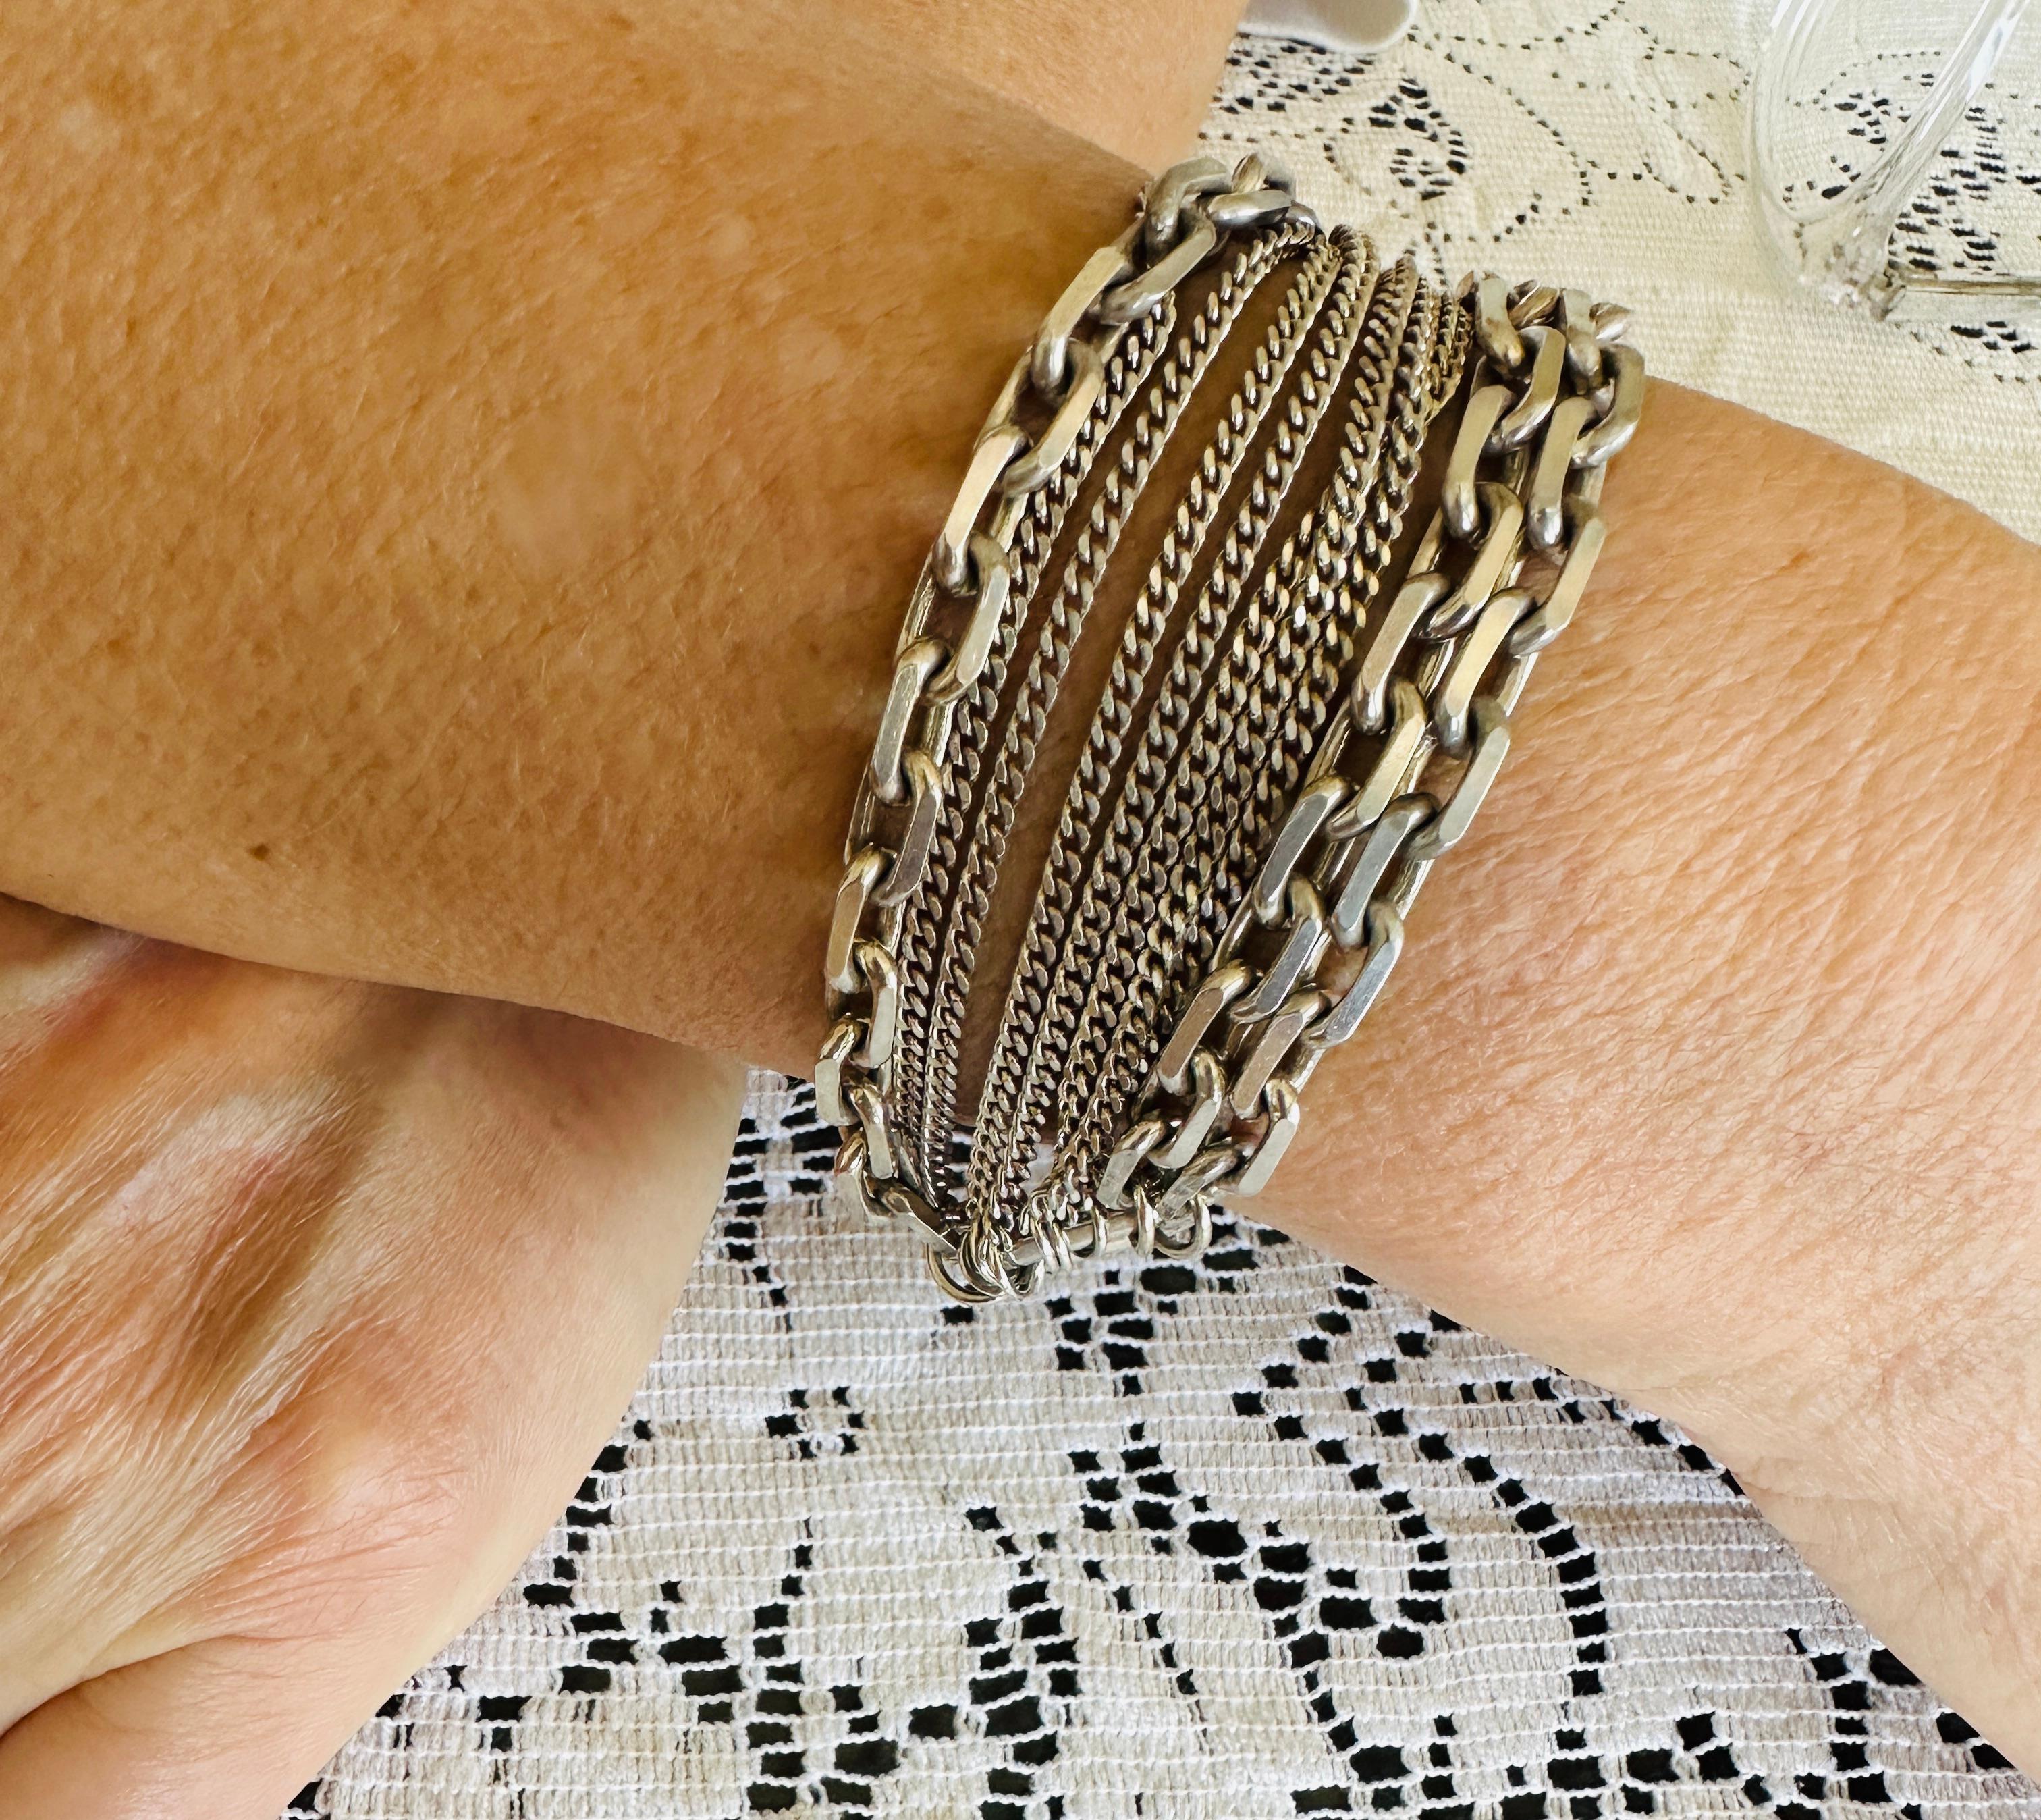 Conçu pour Christofle par Adeleine Cacheux, ce rare bracelet en argent massif était vendu exclusivement dans les boutiques Christofle.

Il comporte 10 brins de chaîne en argent de différentes dimensions et est doté d'un mécanisme à ressort